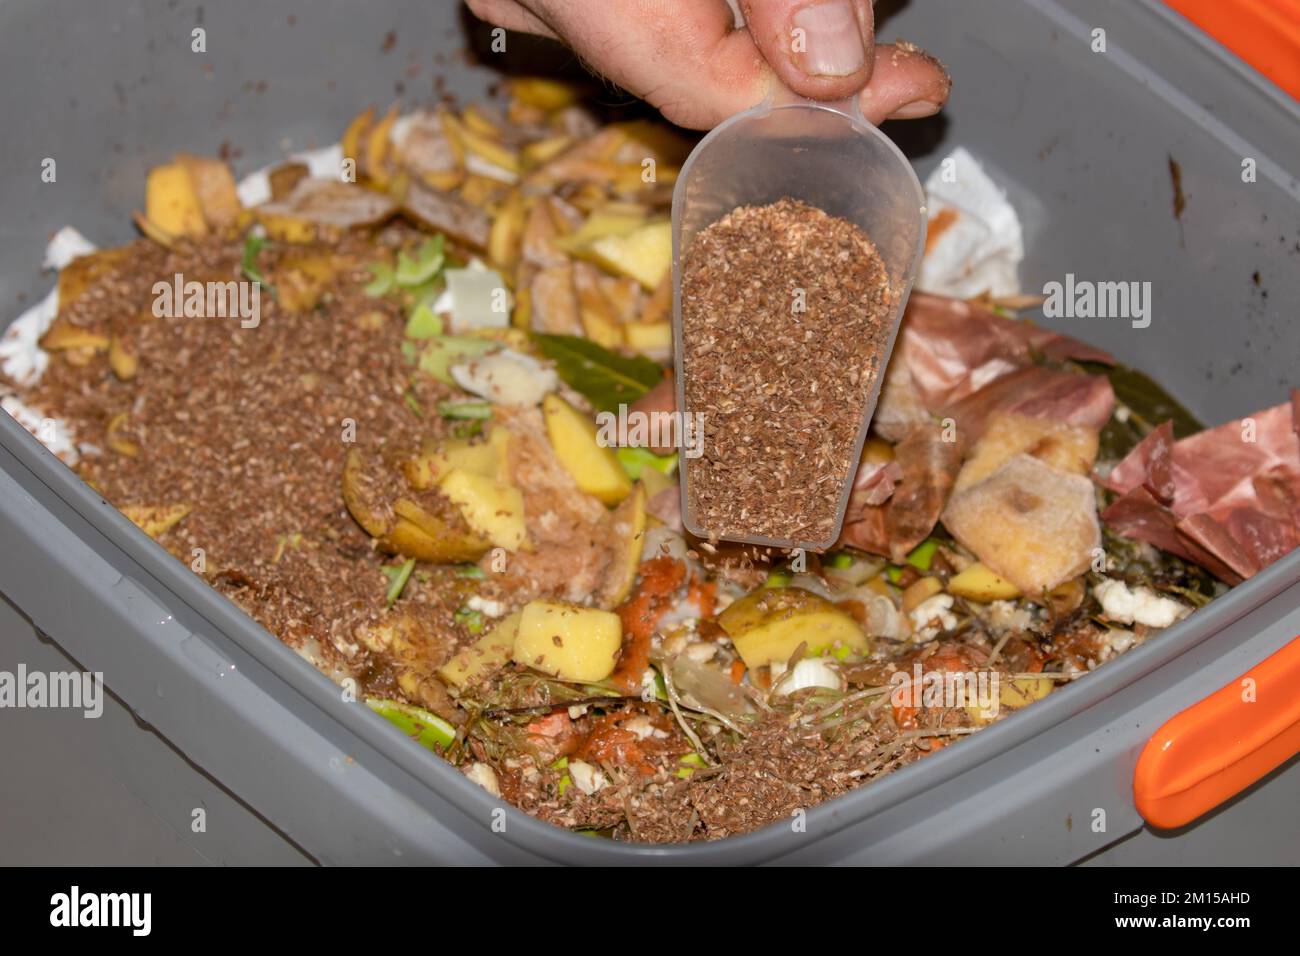 Bokashi-Fermentierungs- und Kompostiermethode. Kompostierung in der Küche mit EM-wirksamen Mikroorganismen, die auf der Weizenkleie imprägniert sind, um sie zu fermentieren Stockfoto